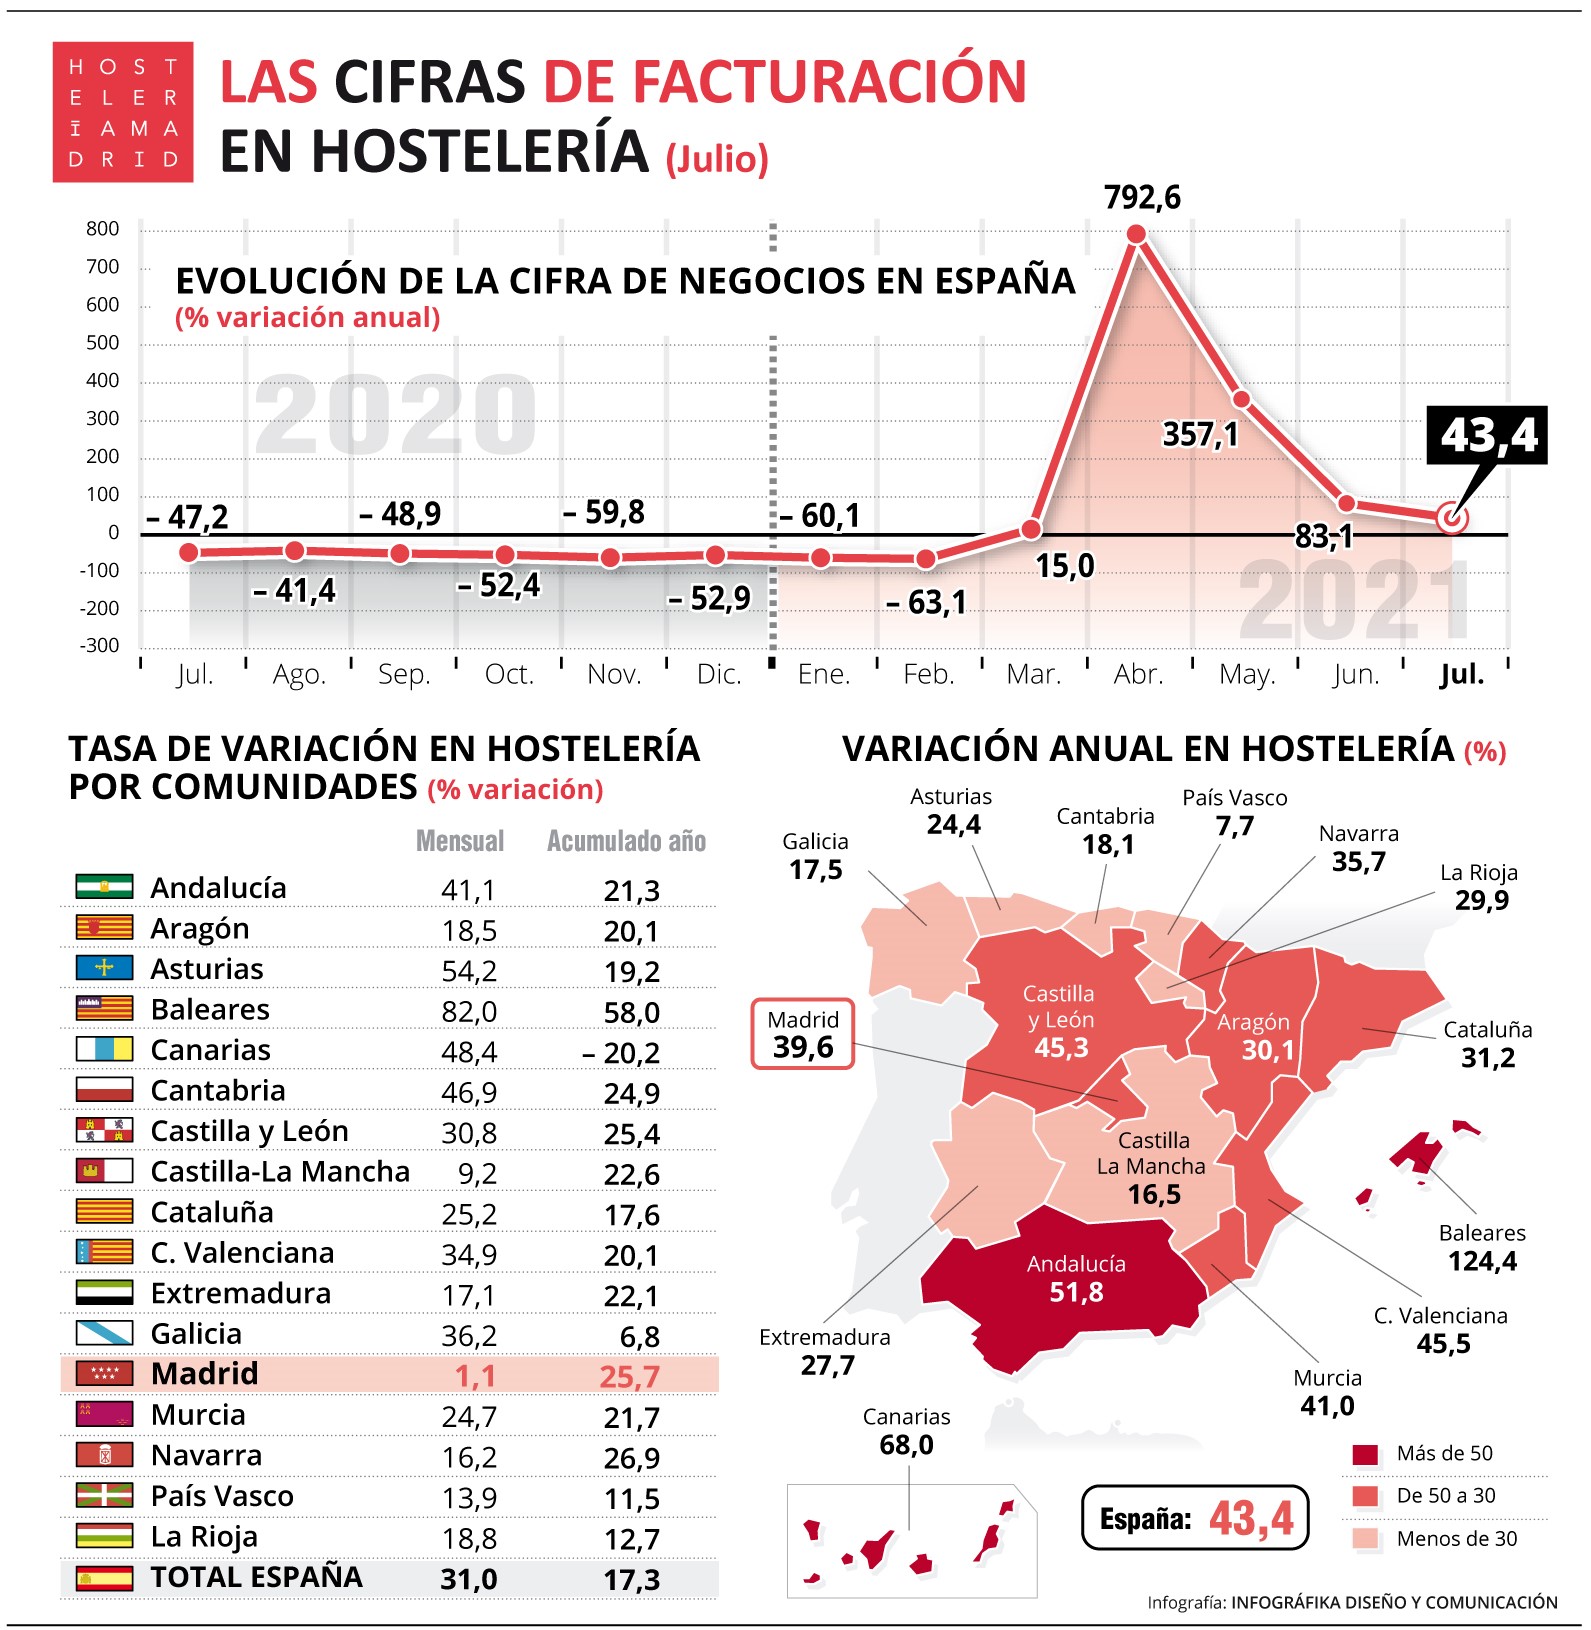 La hostelería de Madrid recupera un 25,7% de su facturación en lo que va de año, de enero a julio - La Viña